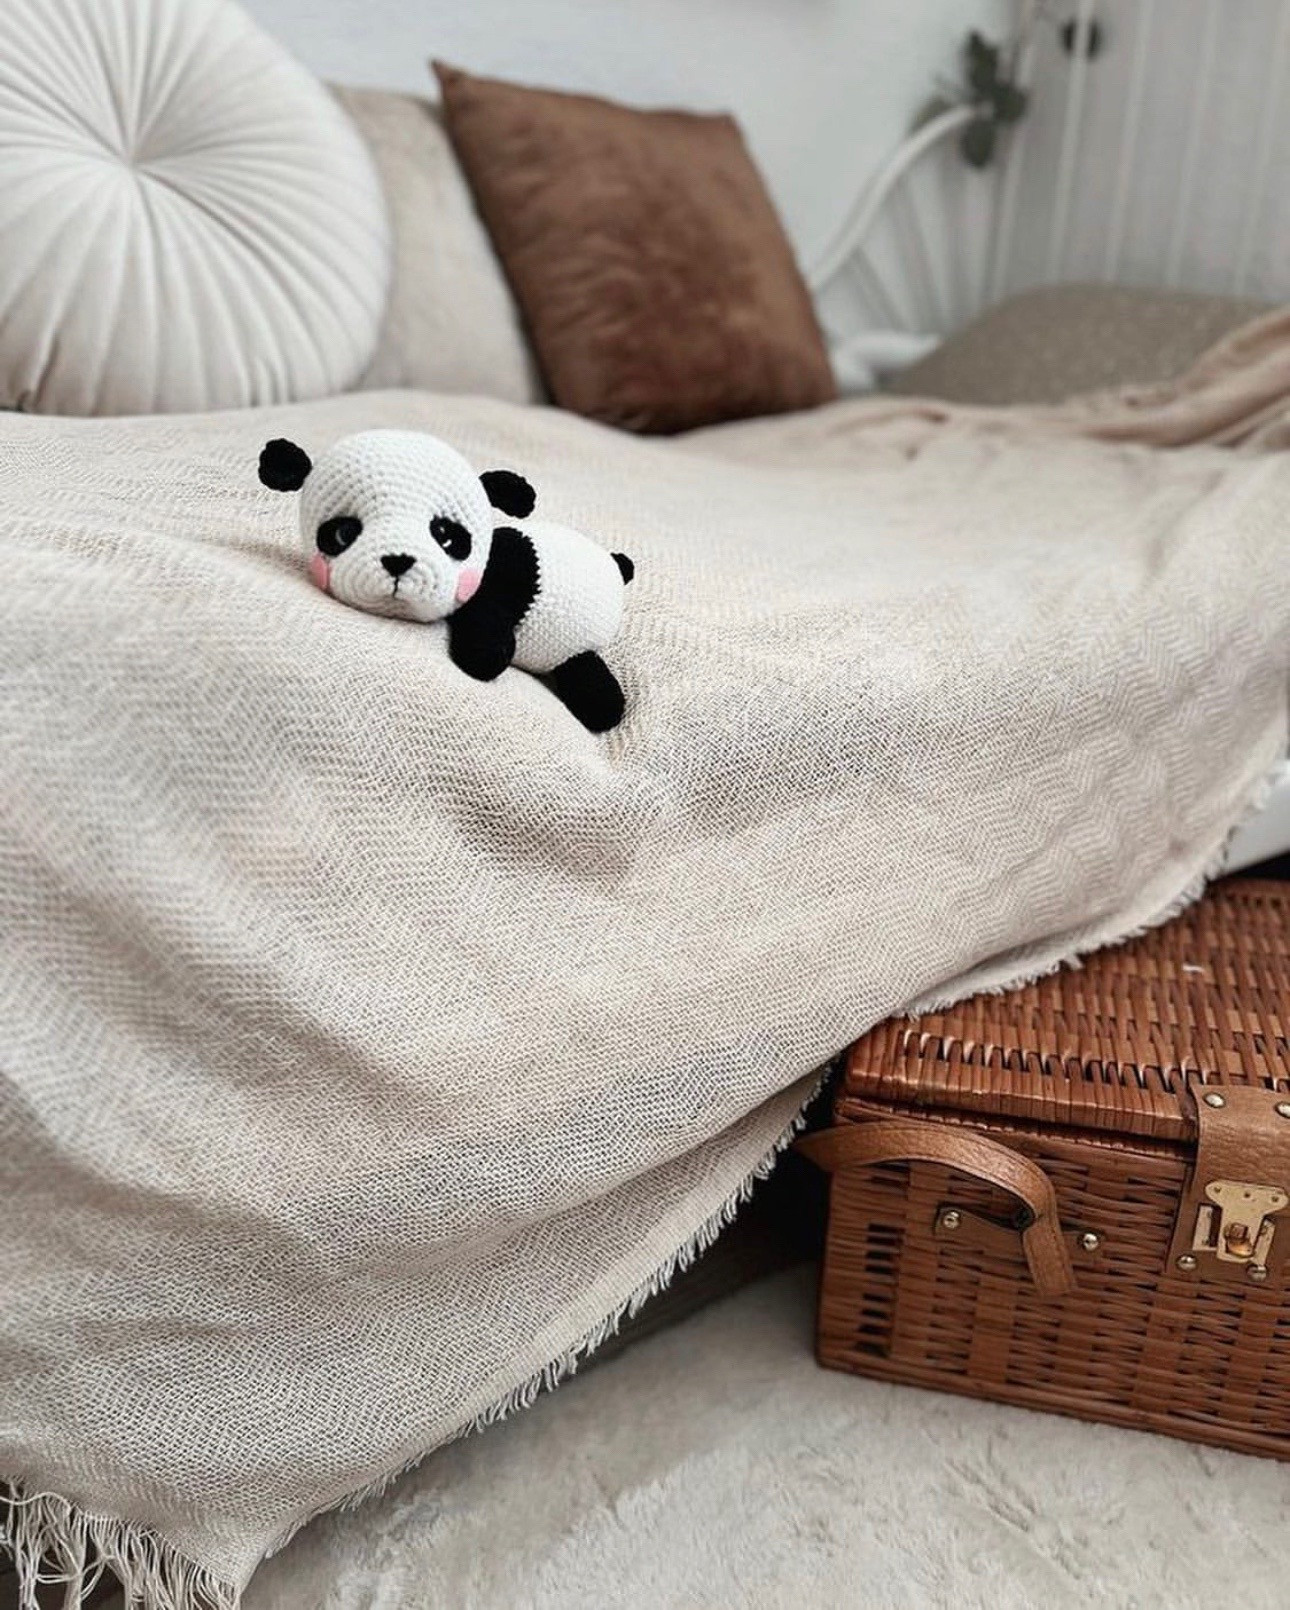 Sleeping panda bear crochet pattern